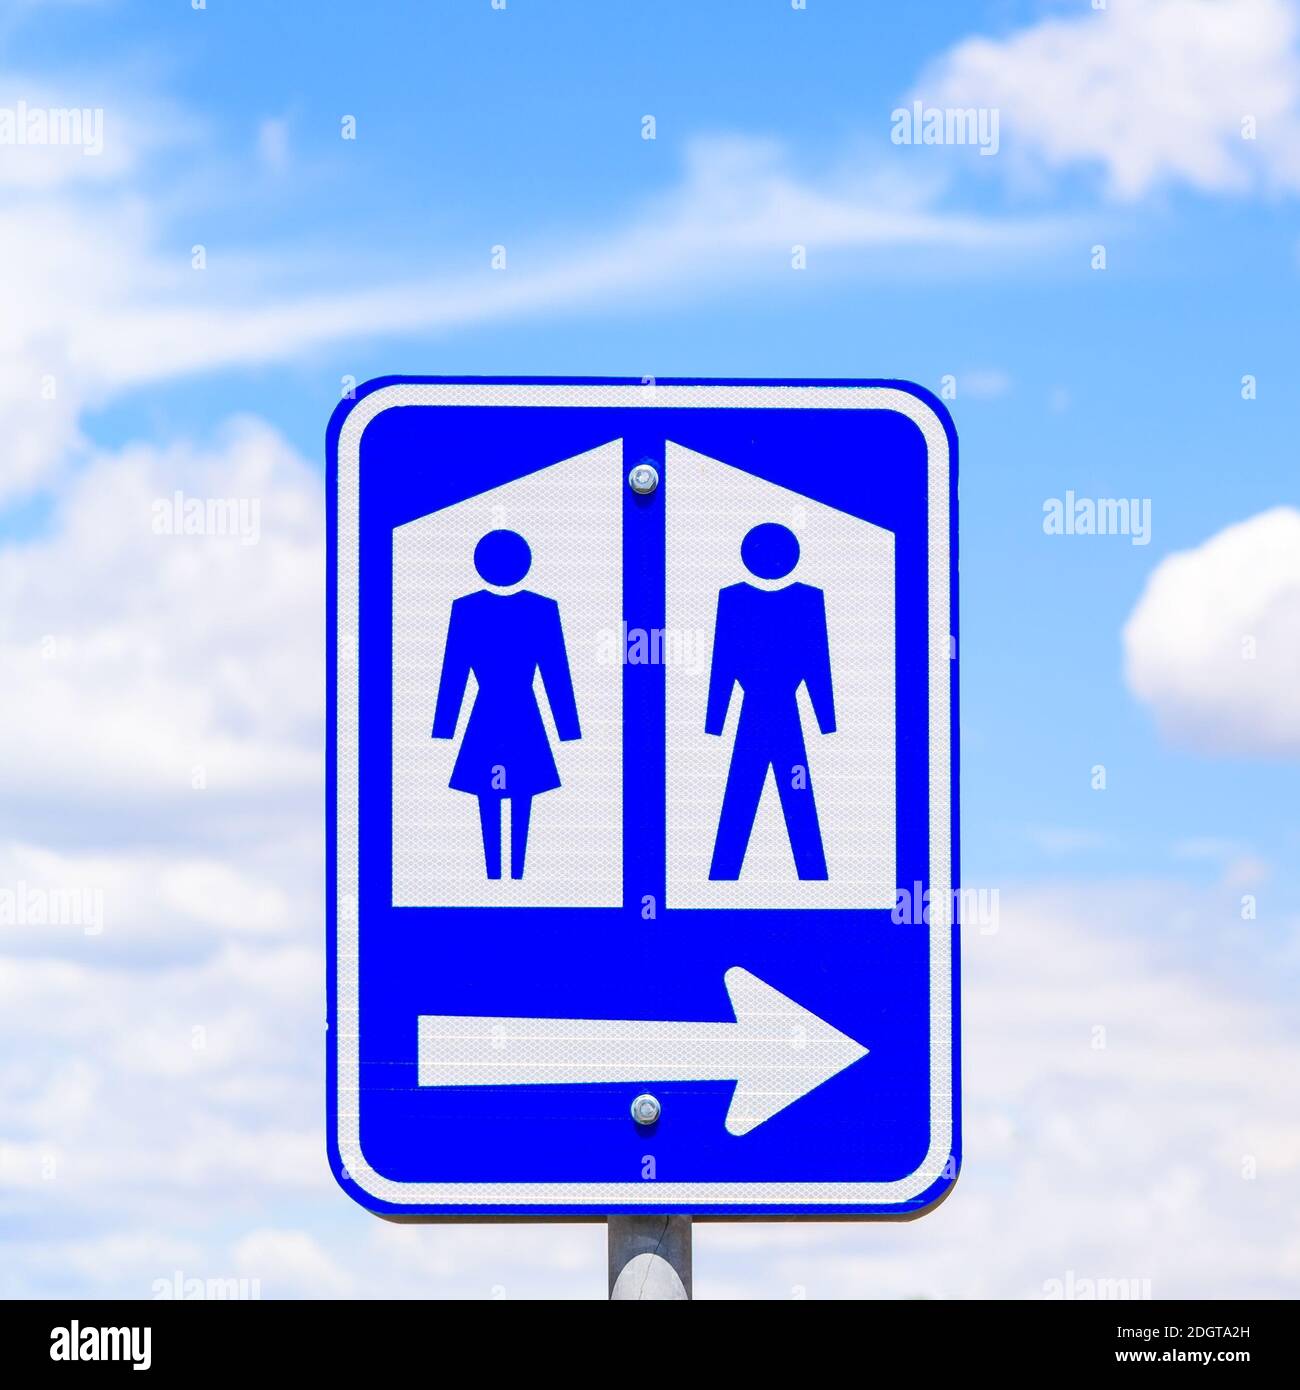 bathroom sign with arrow